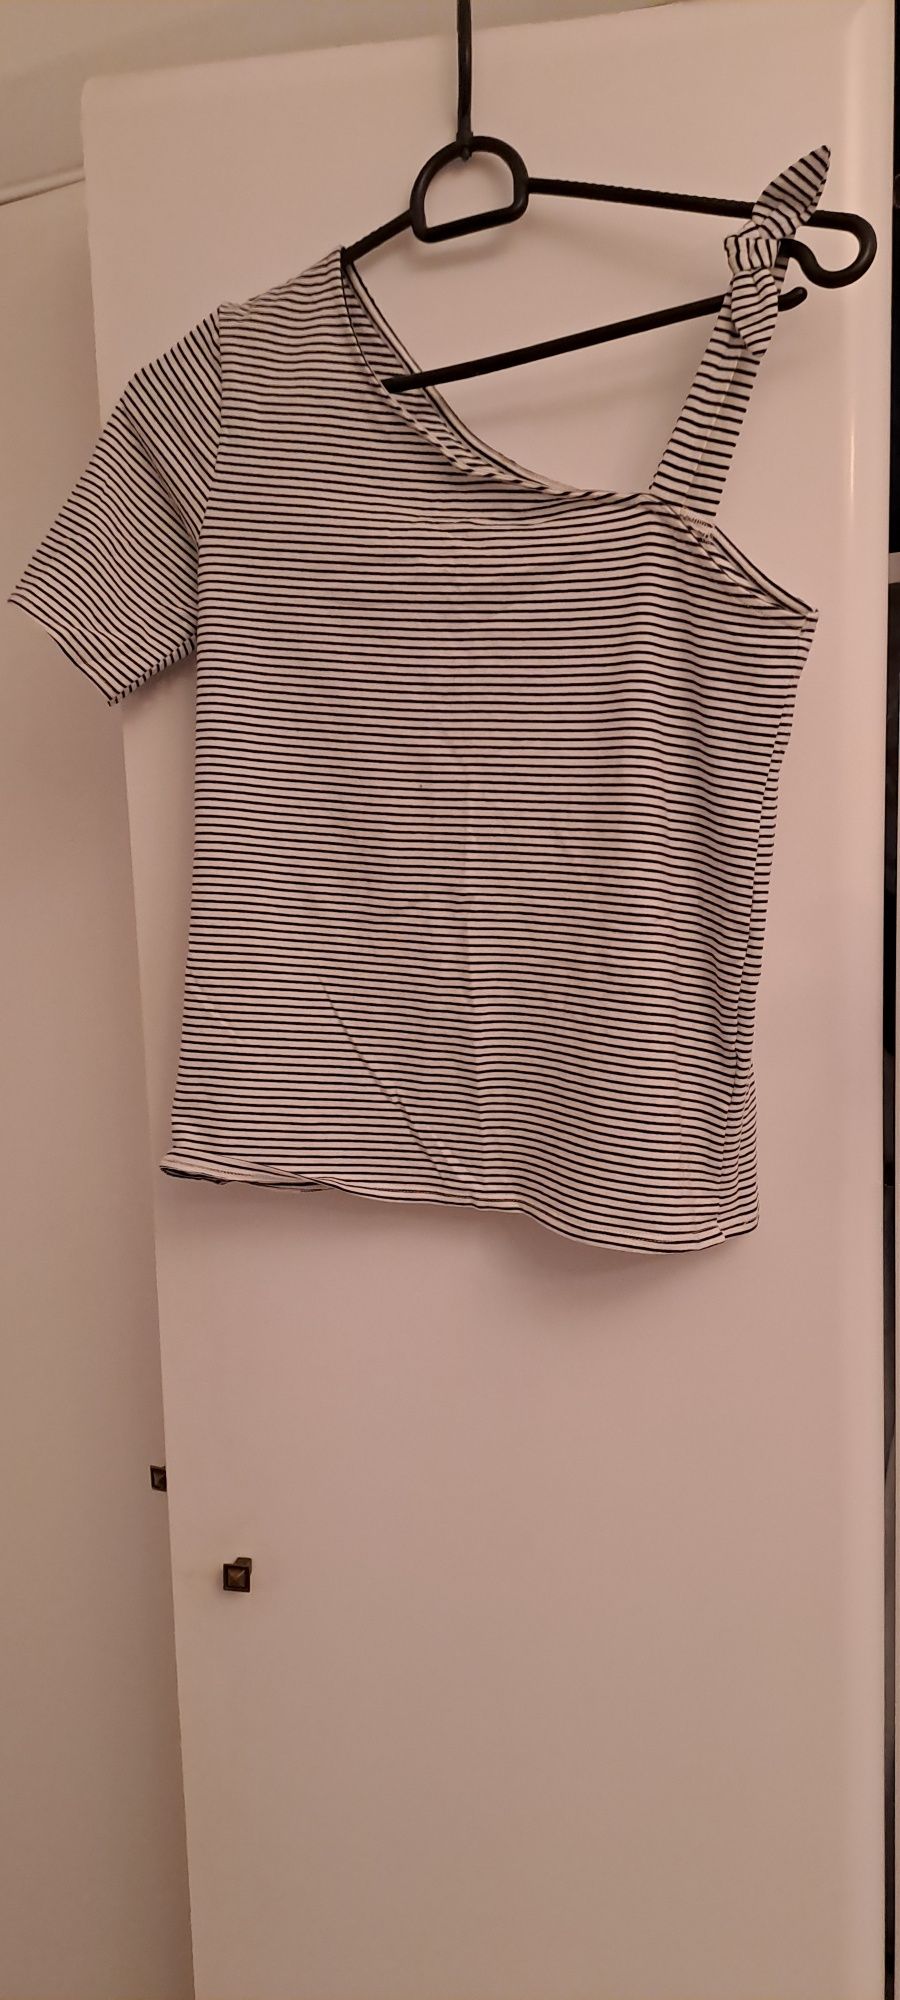 Dziewczęca koszulka na jedno ramiączko marki H&M rozmiar 158/164.